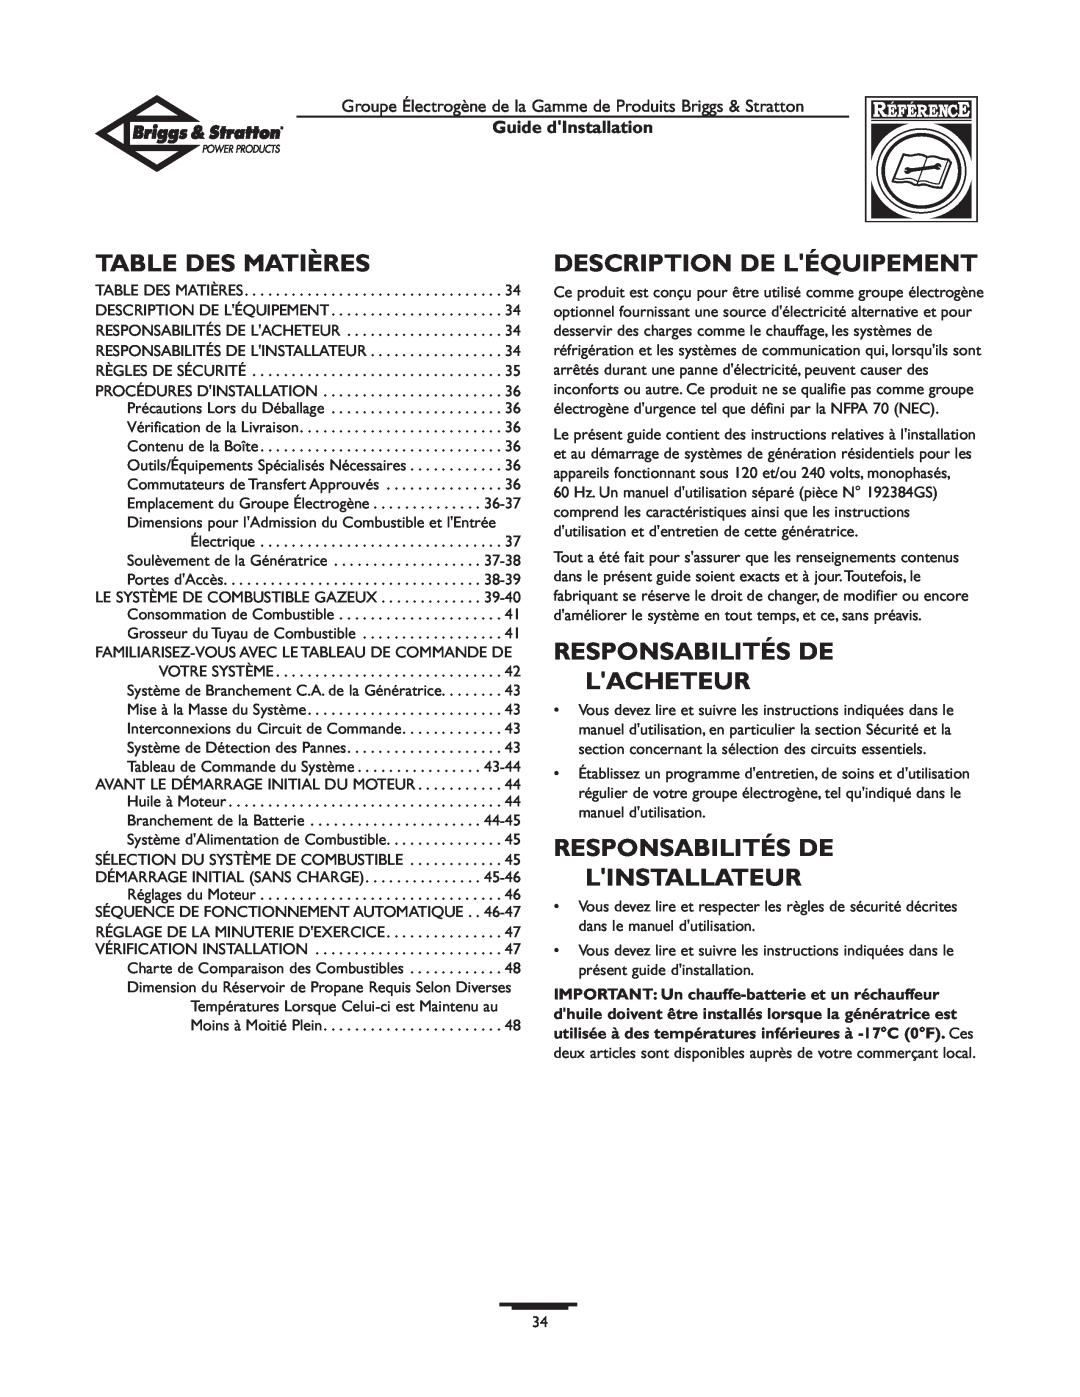 Briggs & Stratton 01938-0 manual Table Des Matières, Description De Léquipement, Responsabilités De Lacheteur 